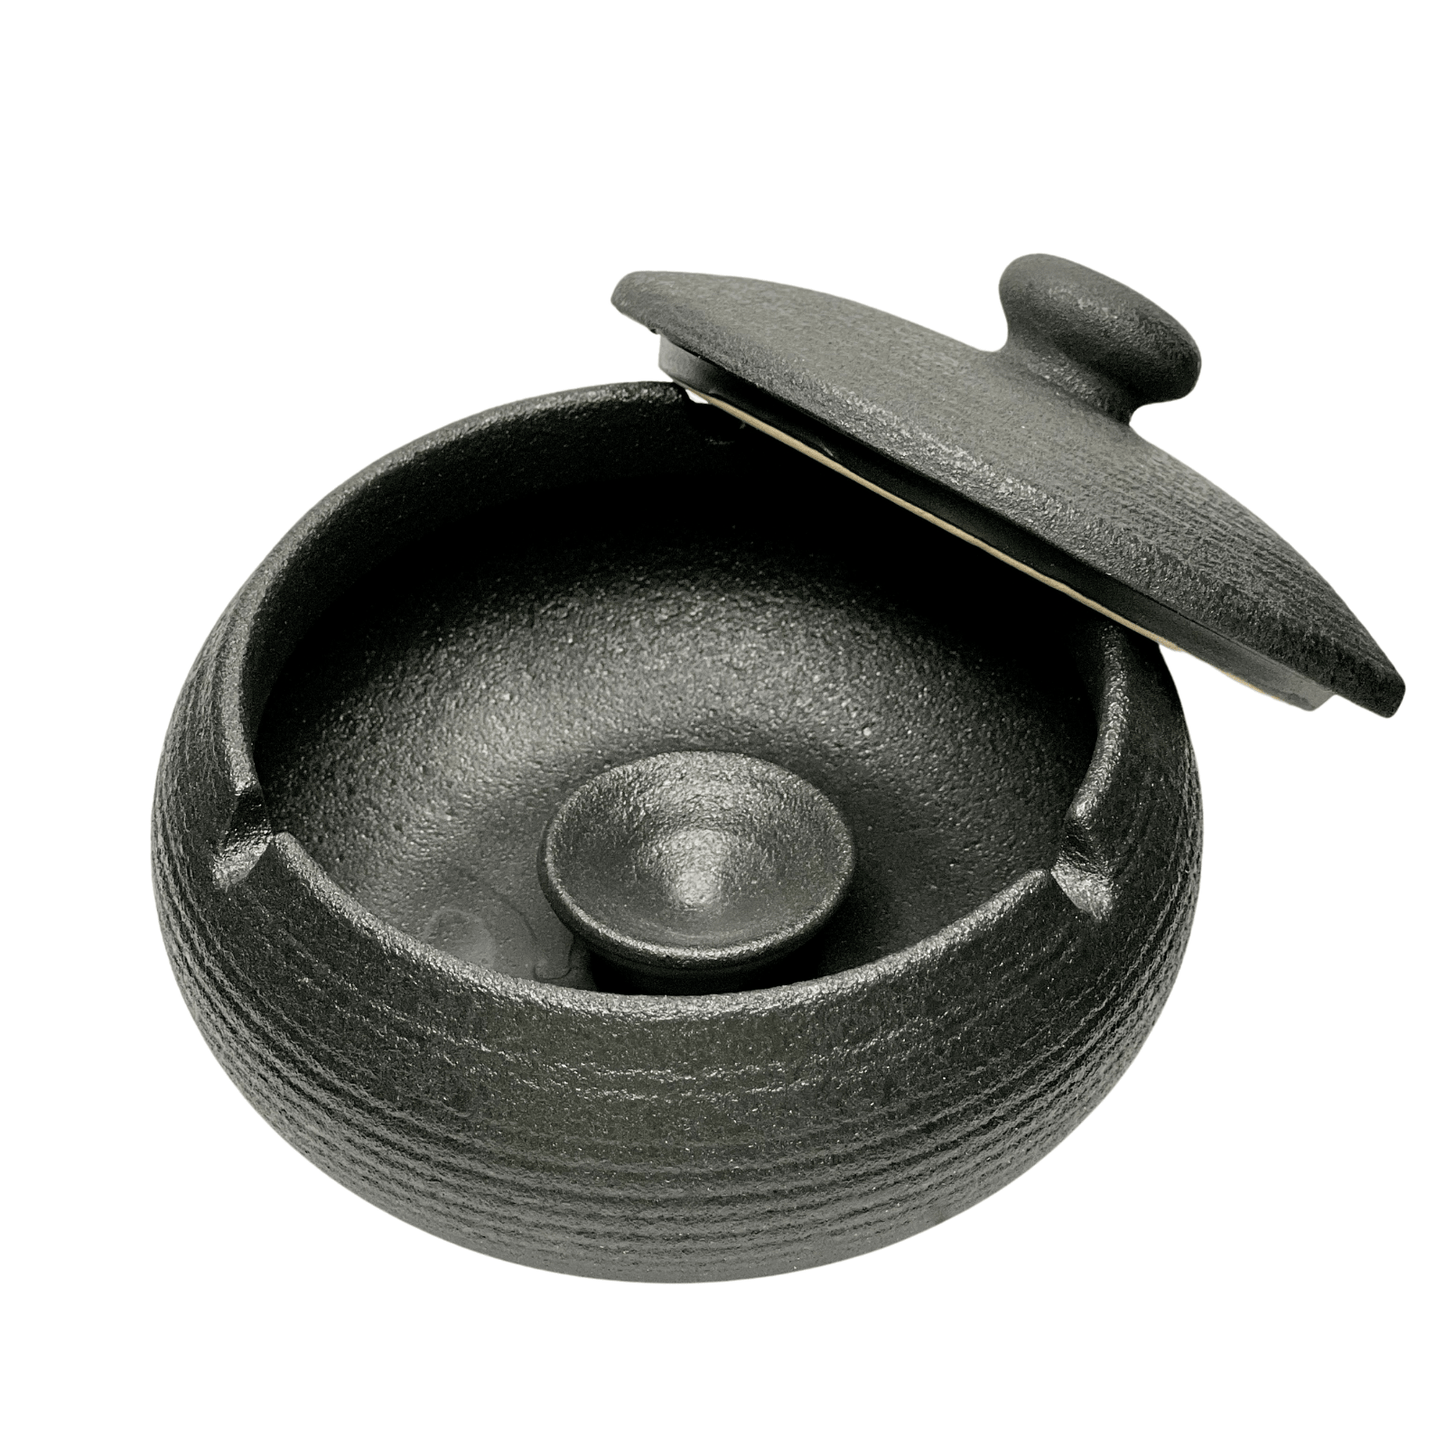 Ceramic Ashtray or incense burner